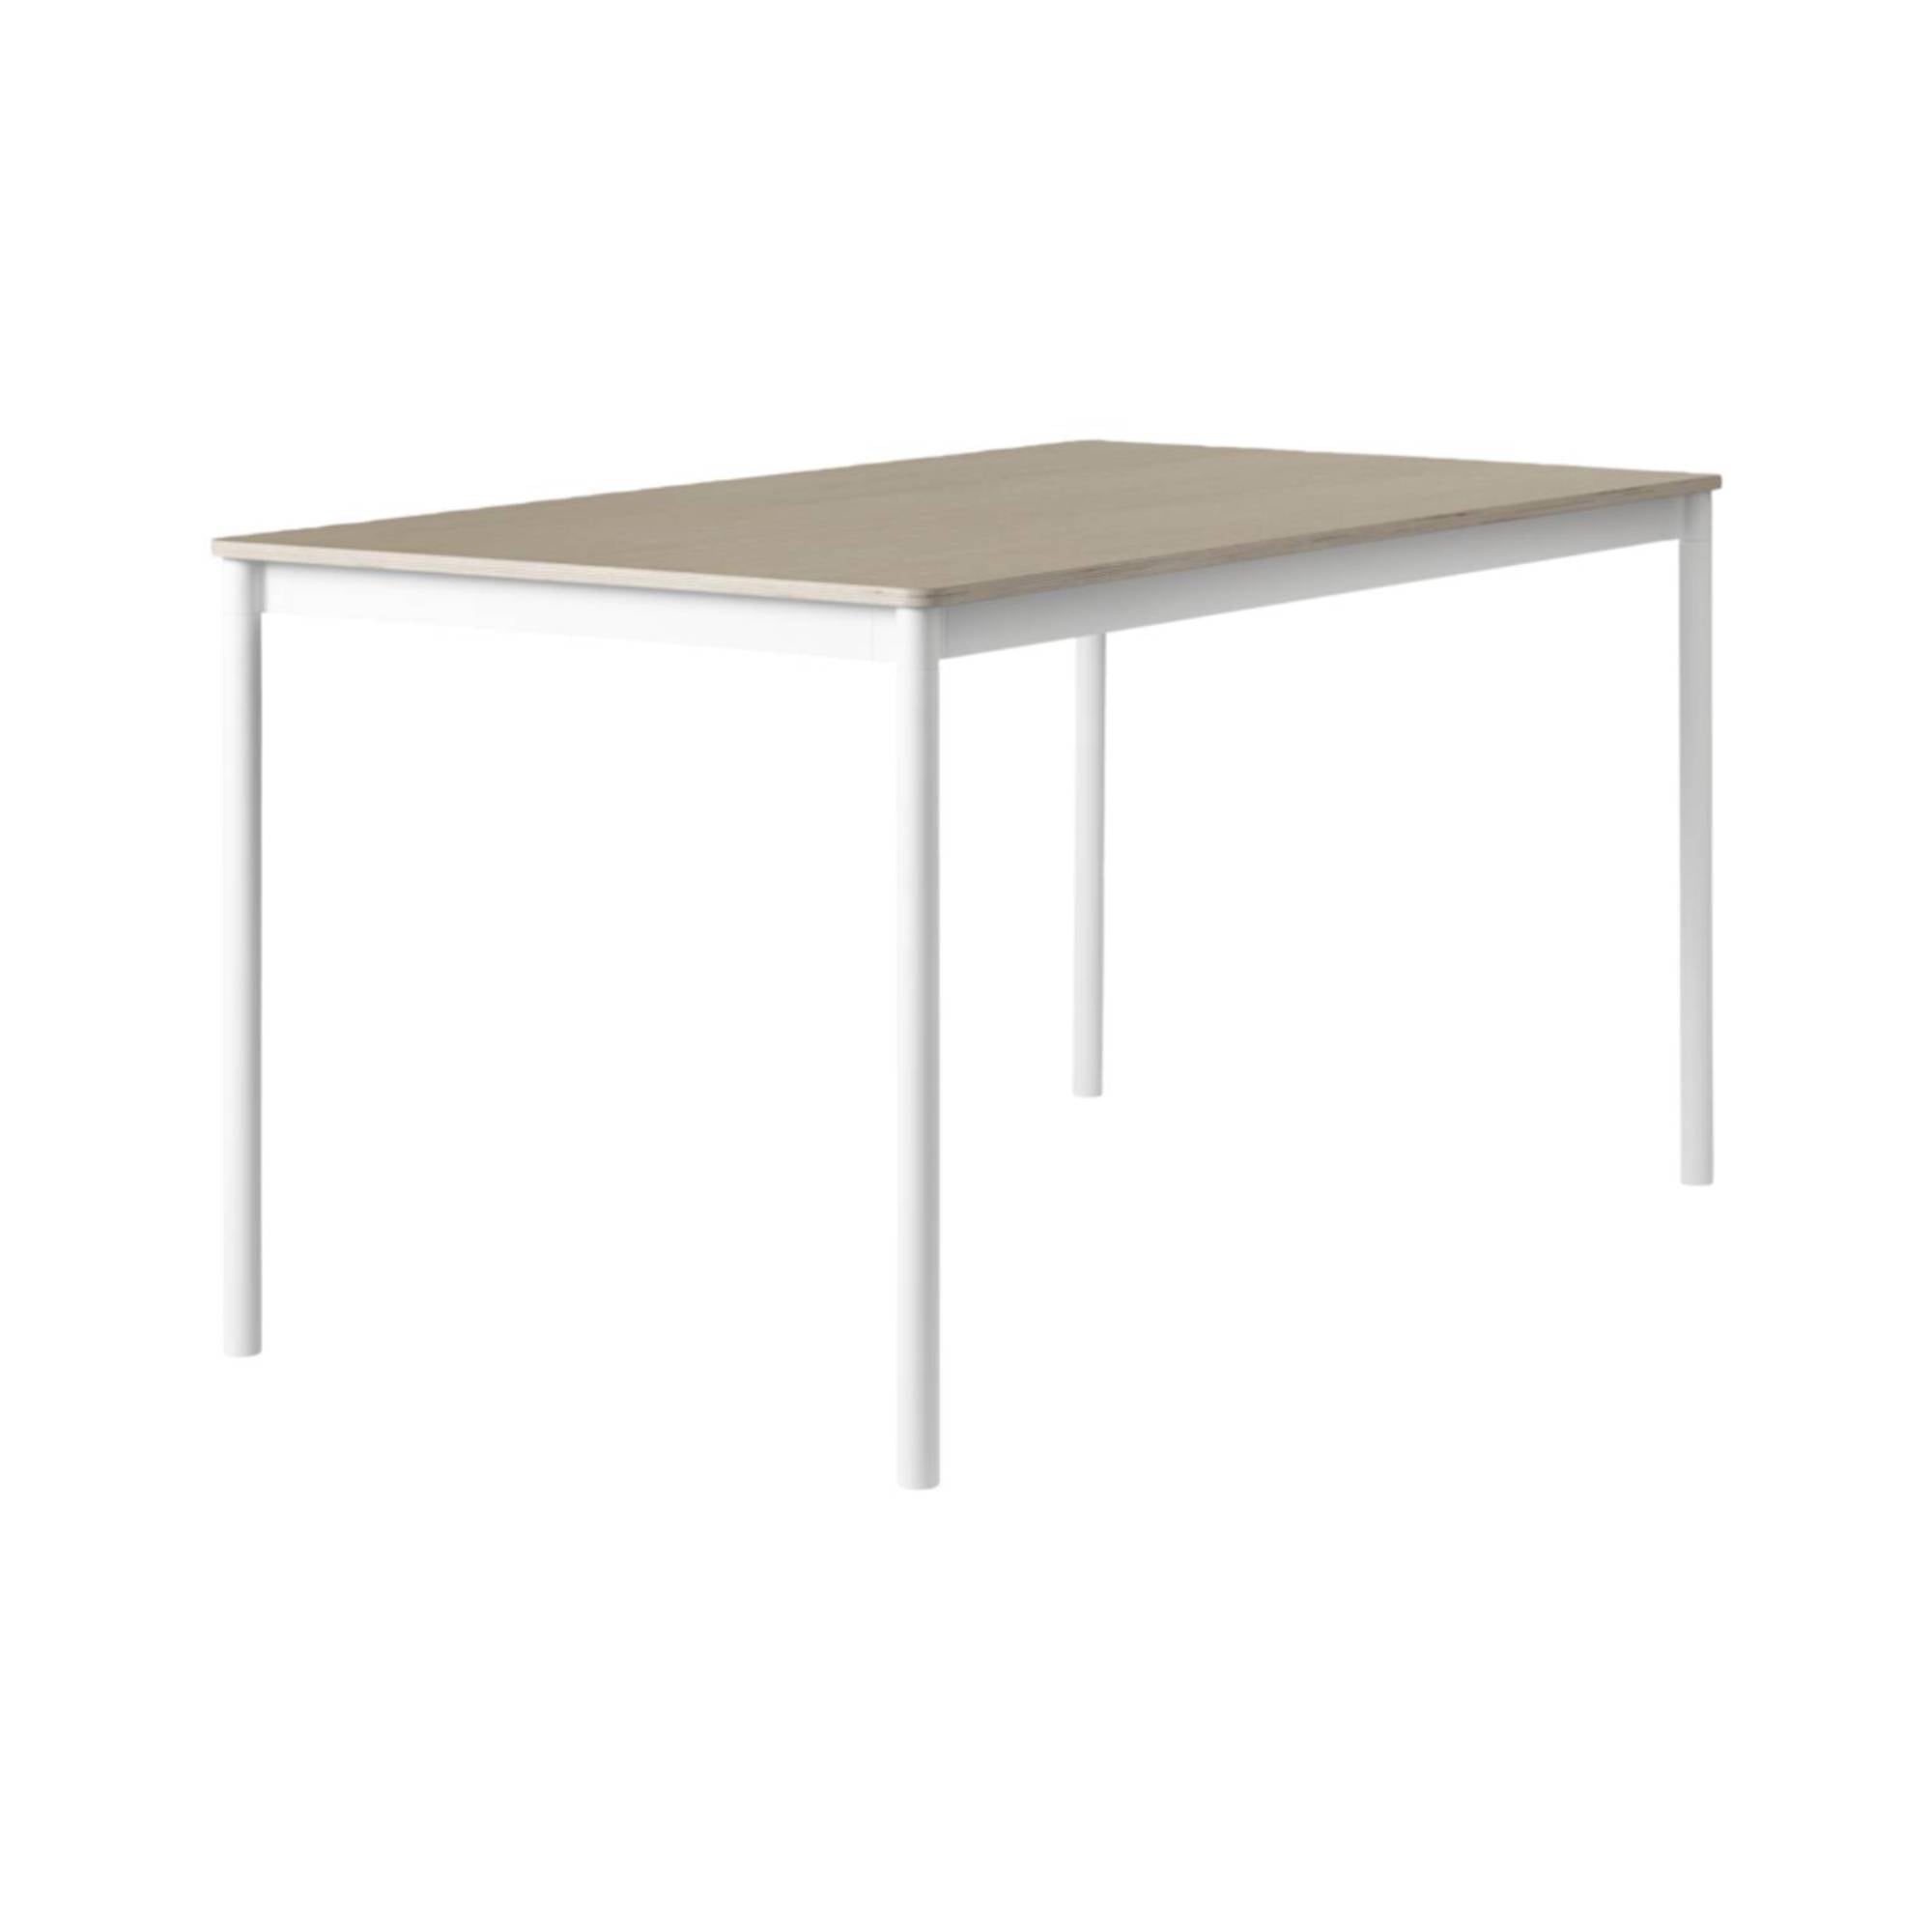 Base Table: Small + Oak Veneer + Plywood Edge + White